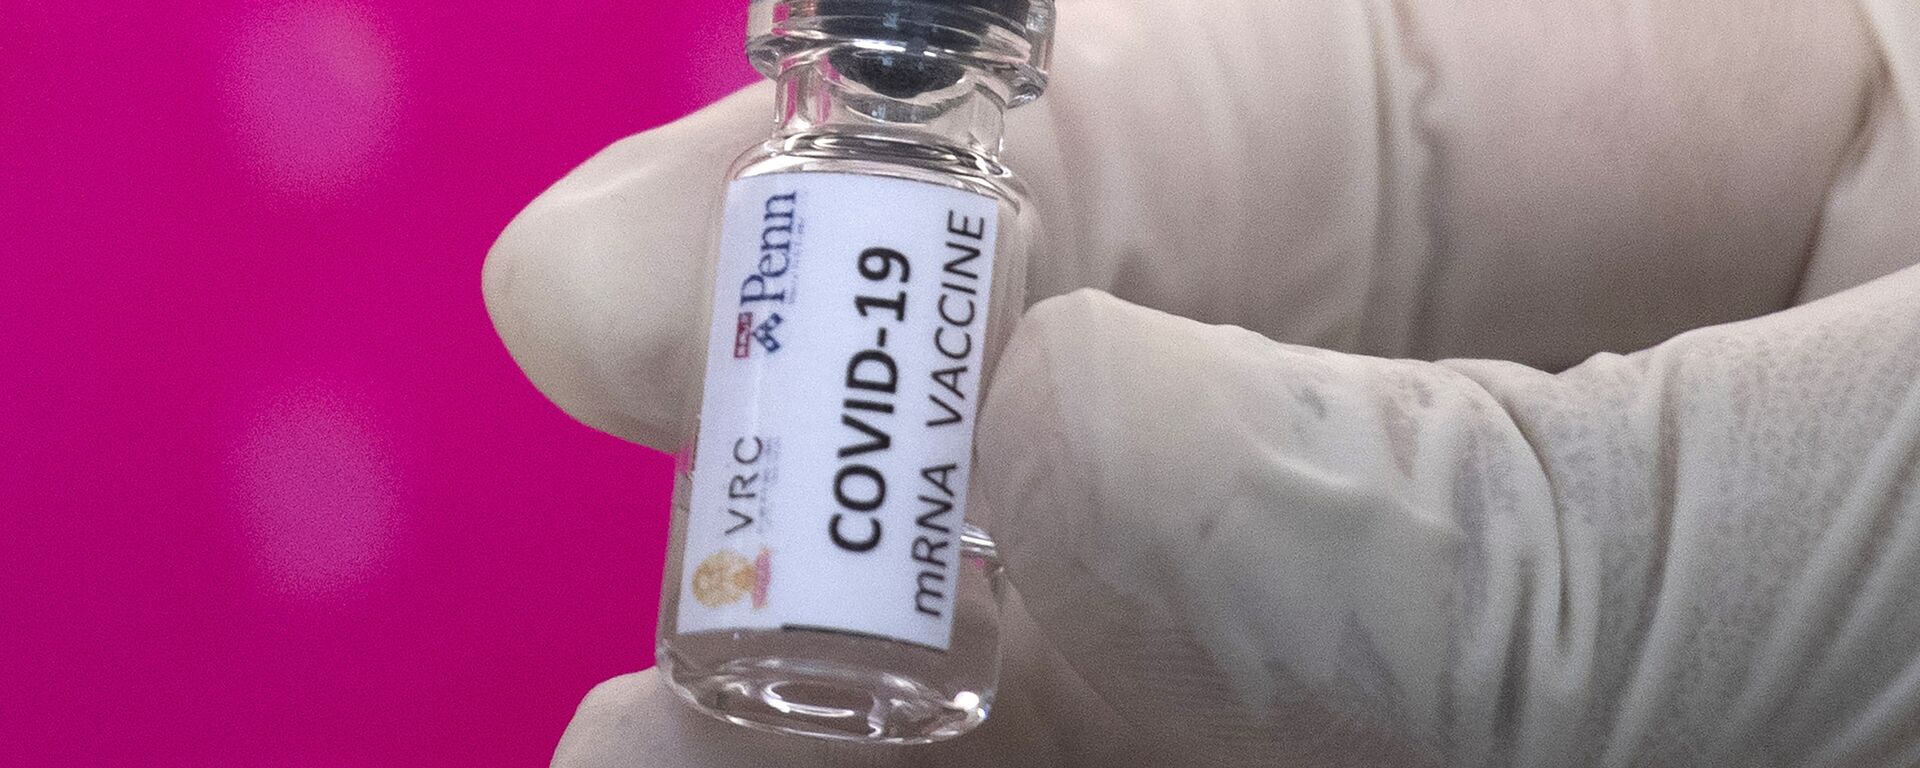 Вакцина от COVID-19 во время тестирования в исследовательском центре вакцин - Sputnik Таджикистан, 1920, 21.09.2020